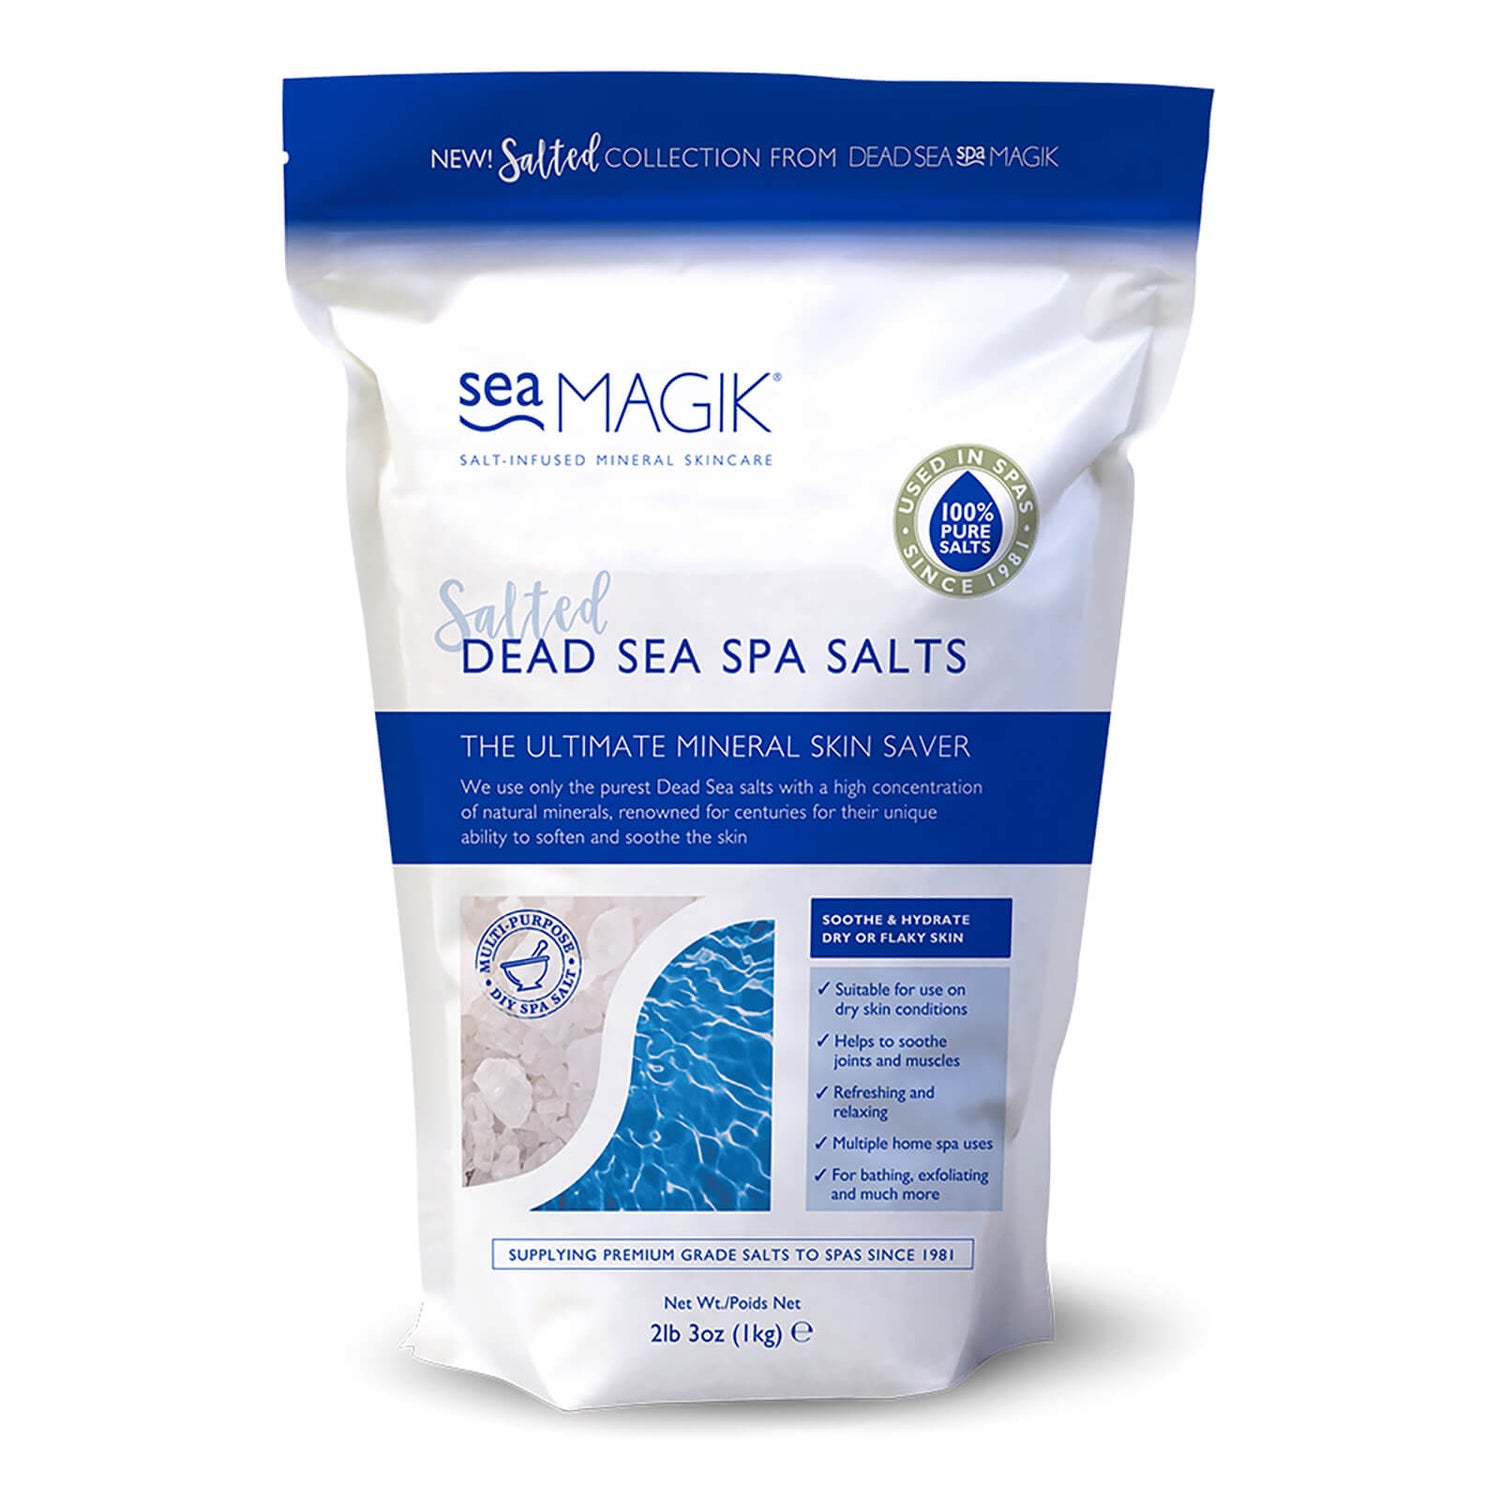 Sea Magik Dead Sea Spa Salts 1kg